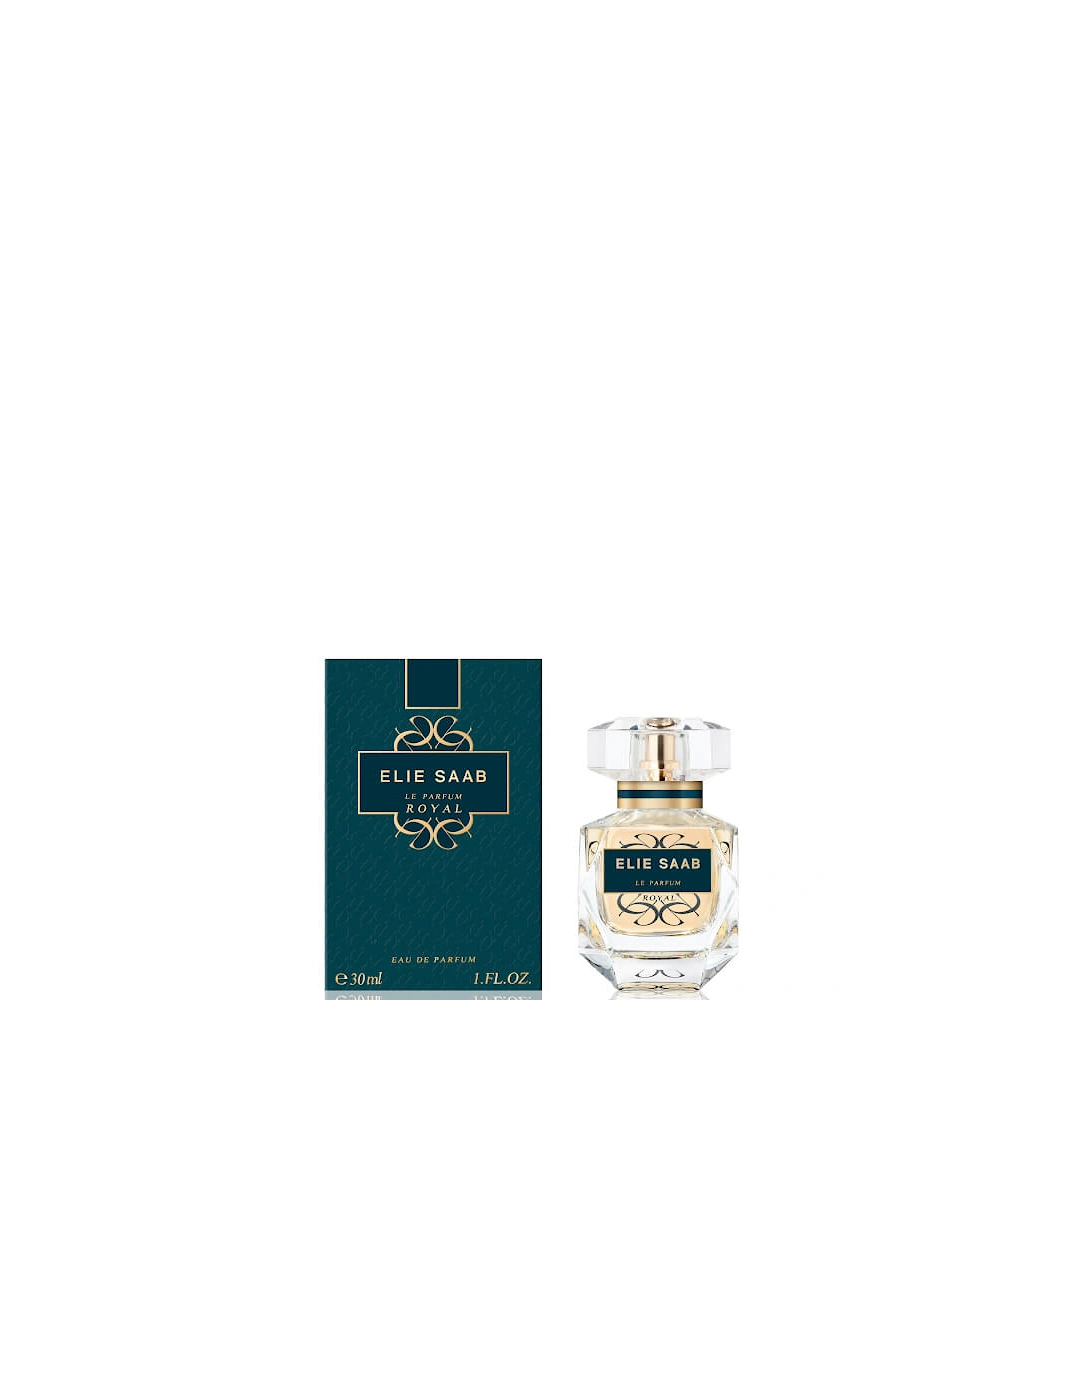 Le Parfum Royal Eau de Parfum 30ml - Elie Saab, 2 of 1